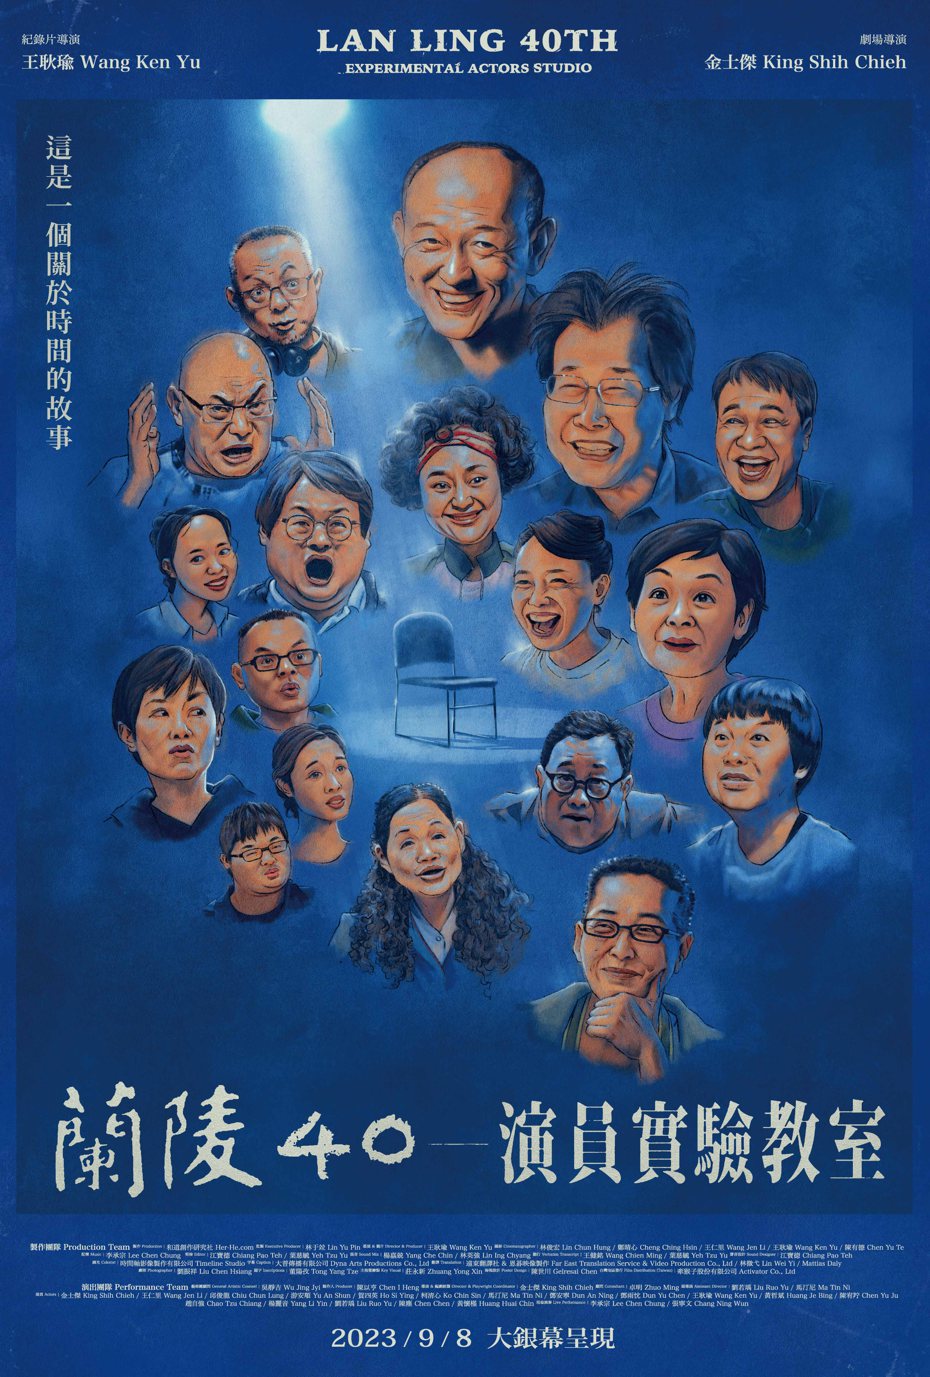 「蘭陵40—演員實驗教室」正式海報以全部成員肖像繪製為主題。圖／牽猴子提供